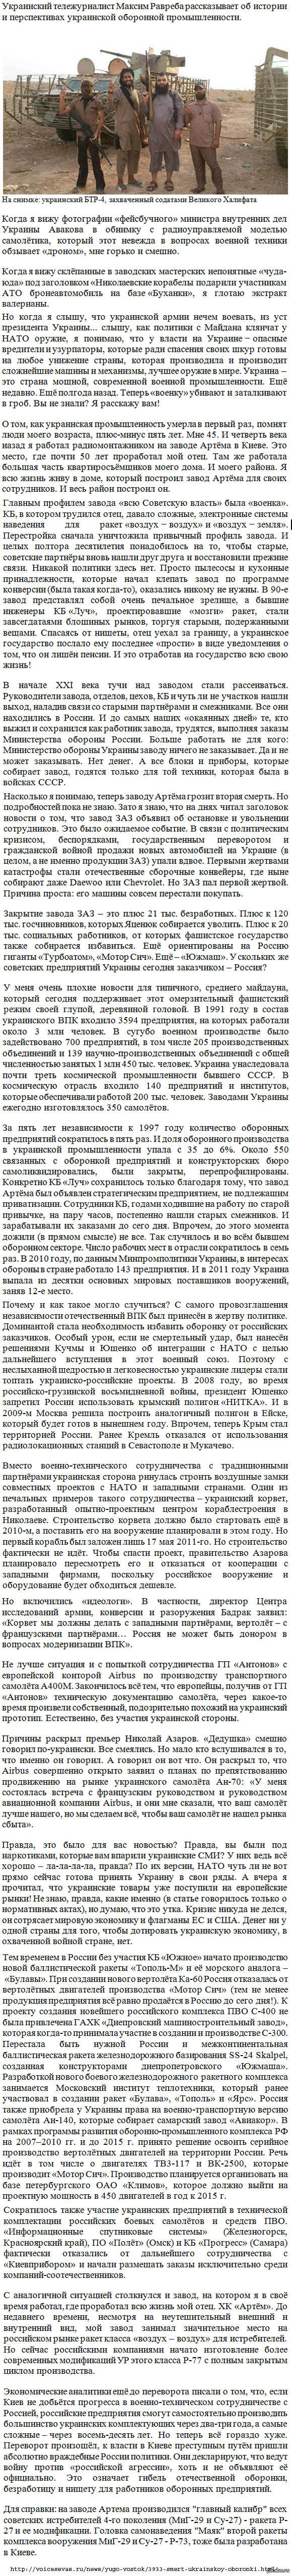    - 10.  . http://voicesevas.ru/news/yugo-vostok/3933-smert-ukrainskoy-oboronki.html